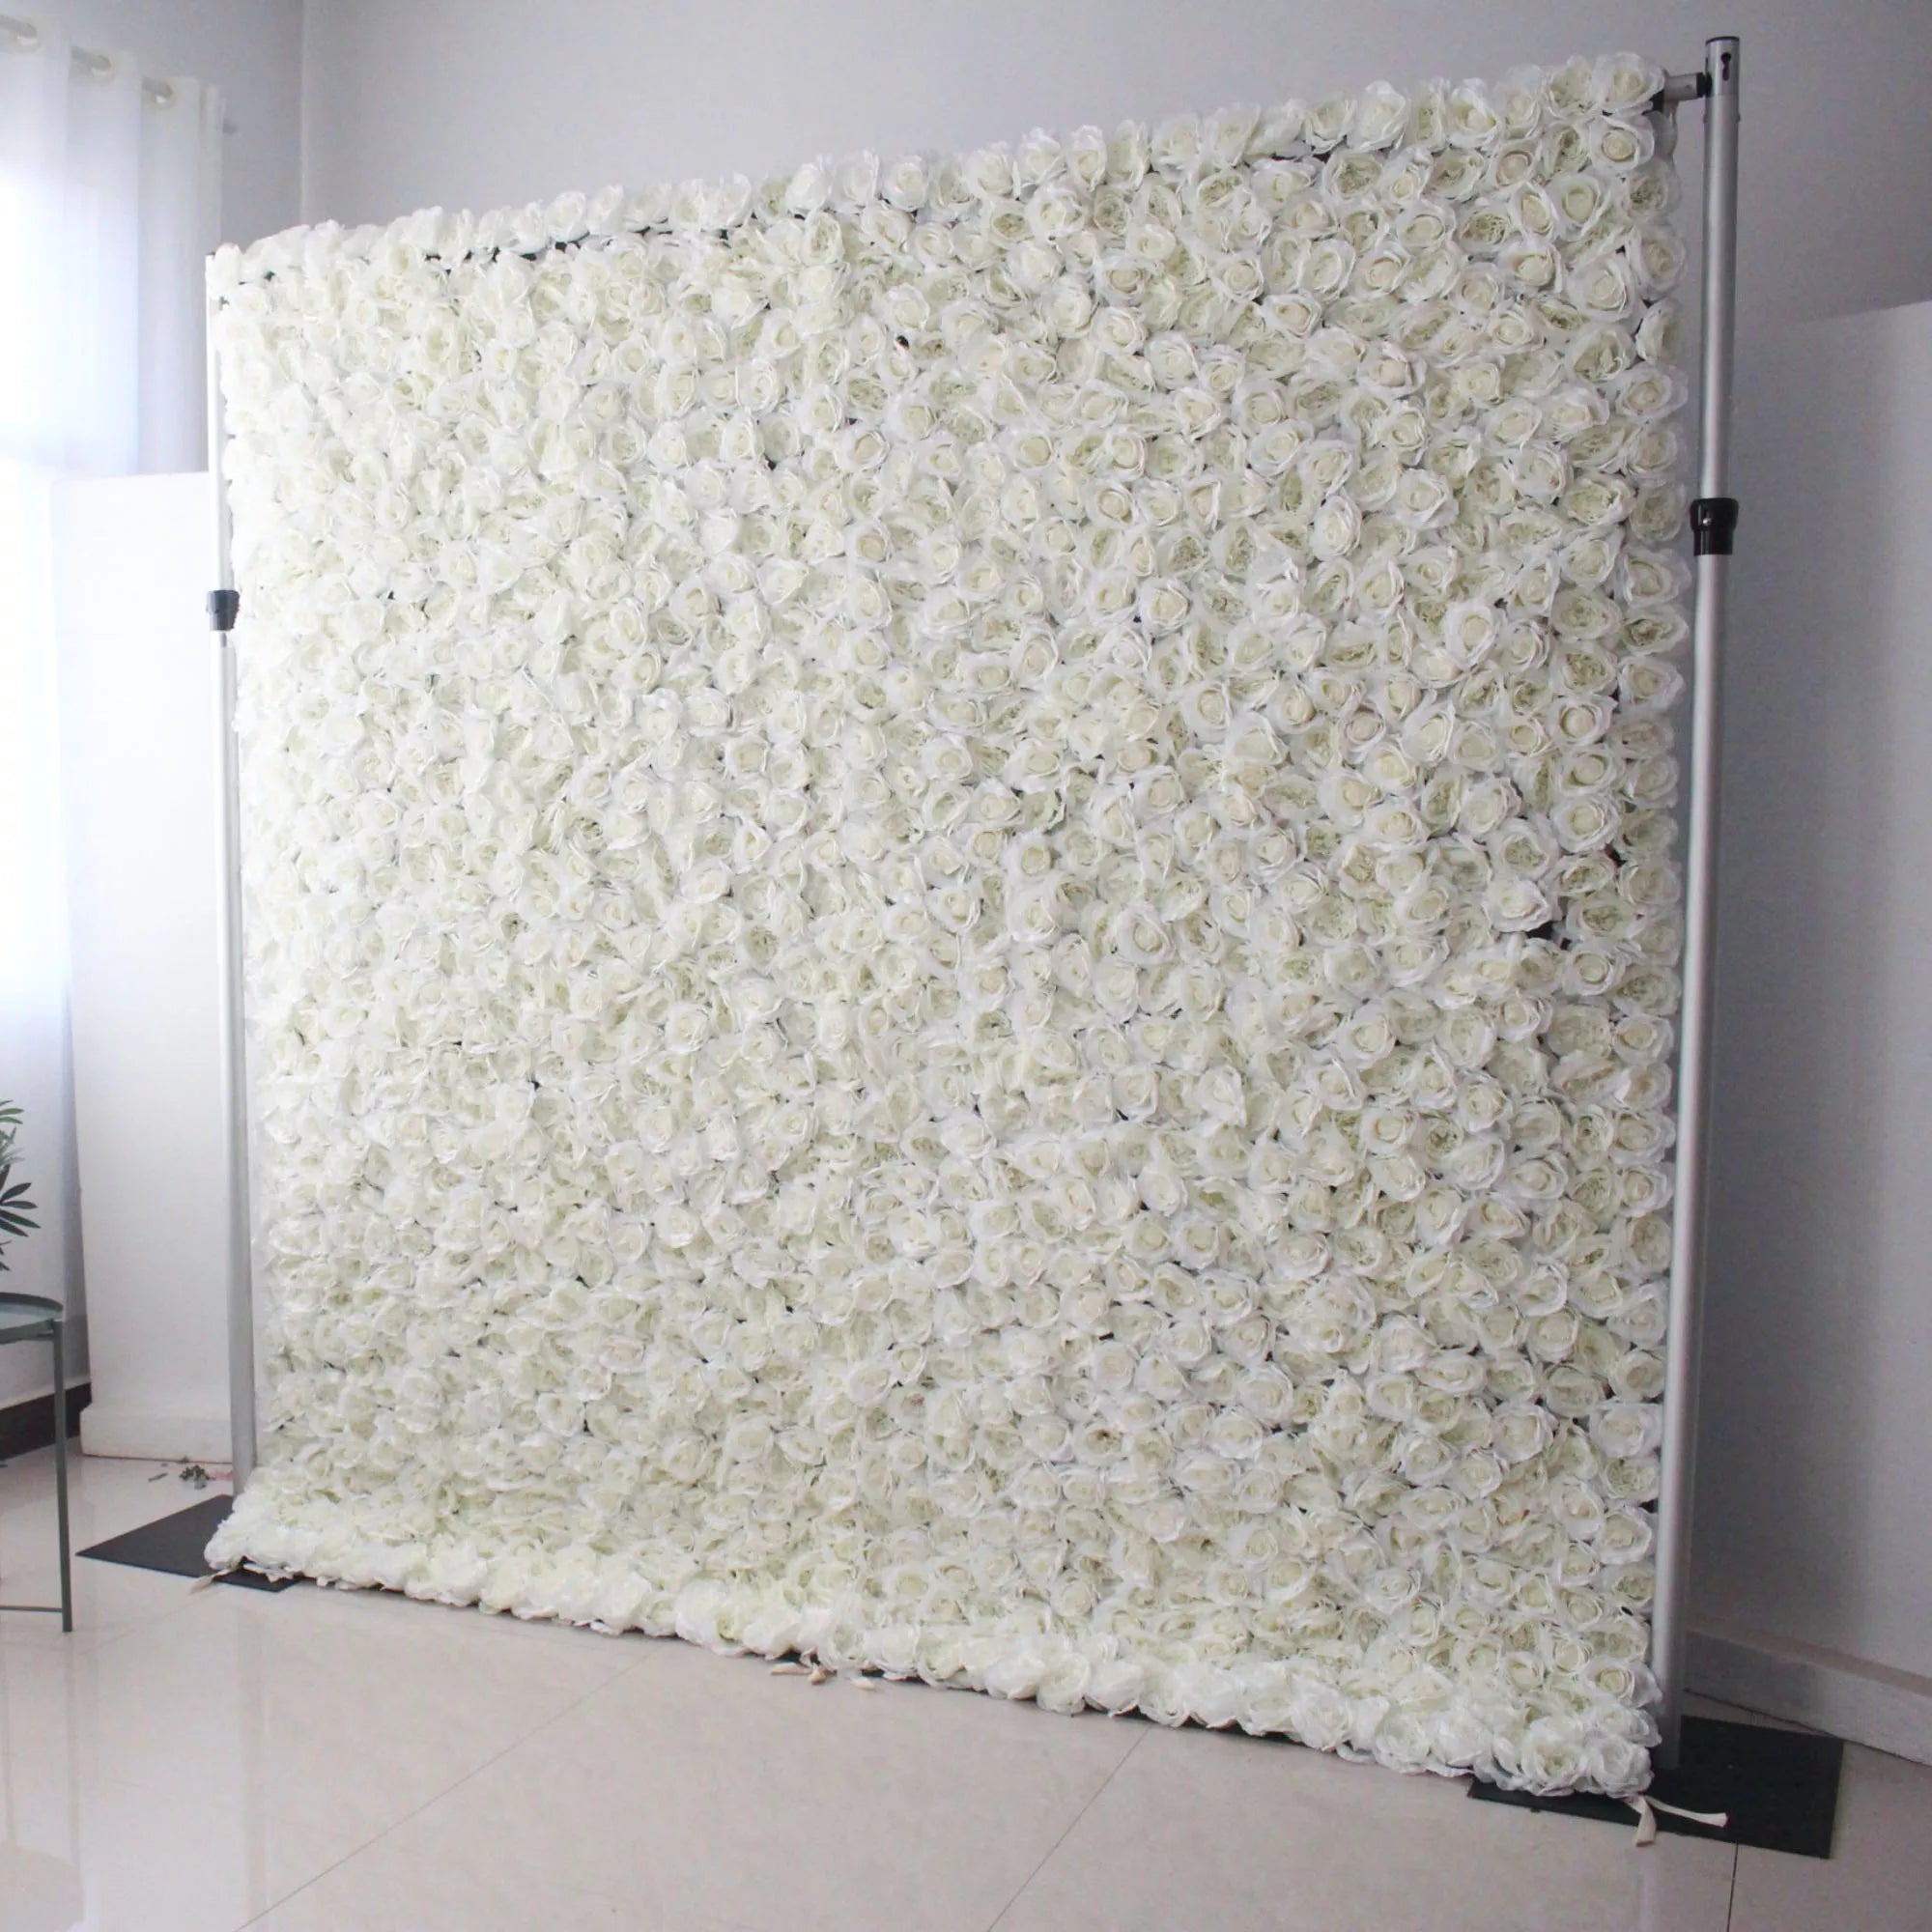 زهور فالار لفة قماش زهور اصطناعية زهور بيضاء خلفية جدار زفاف ، ديكور حفلات زهور ، حدث